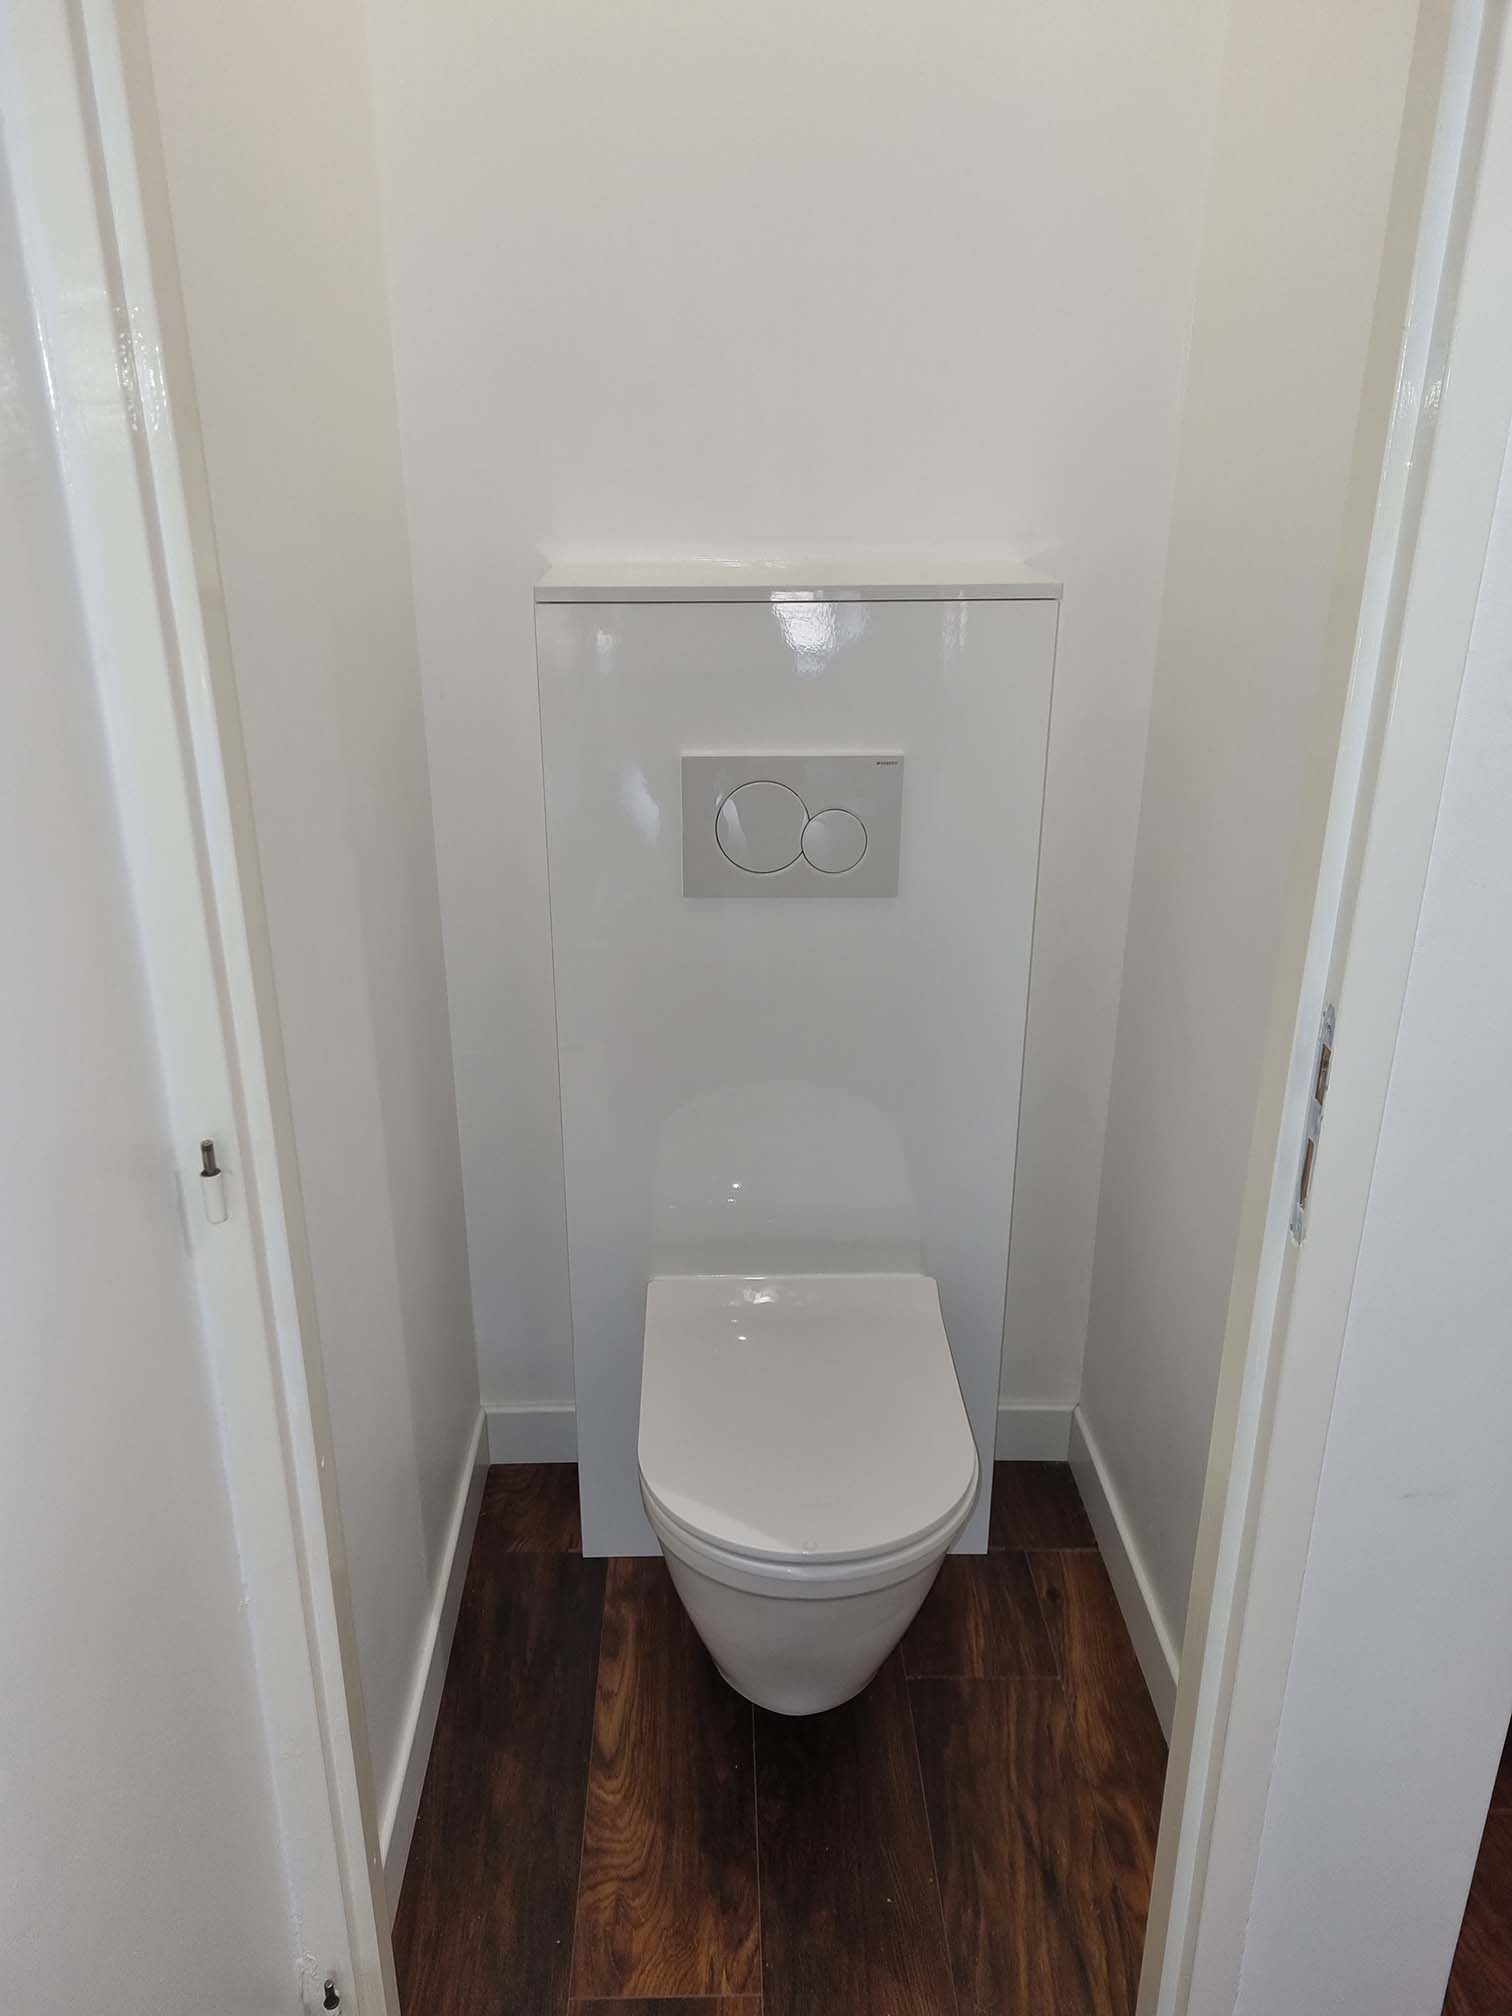 Toilettes posées au mur